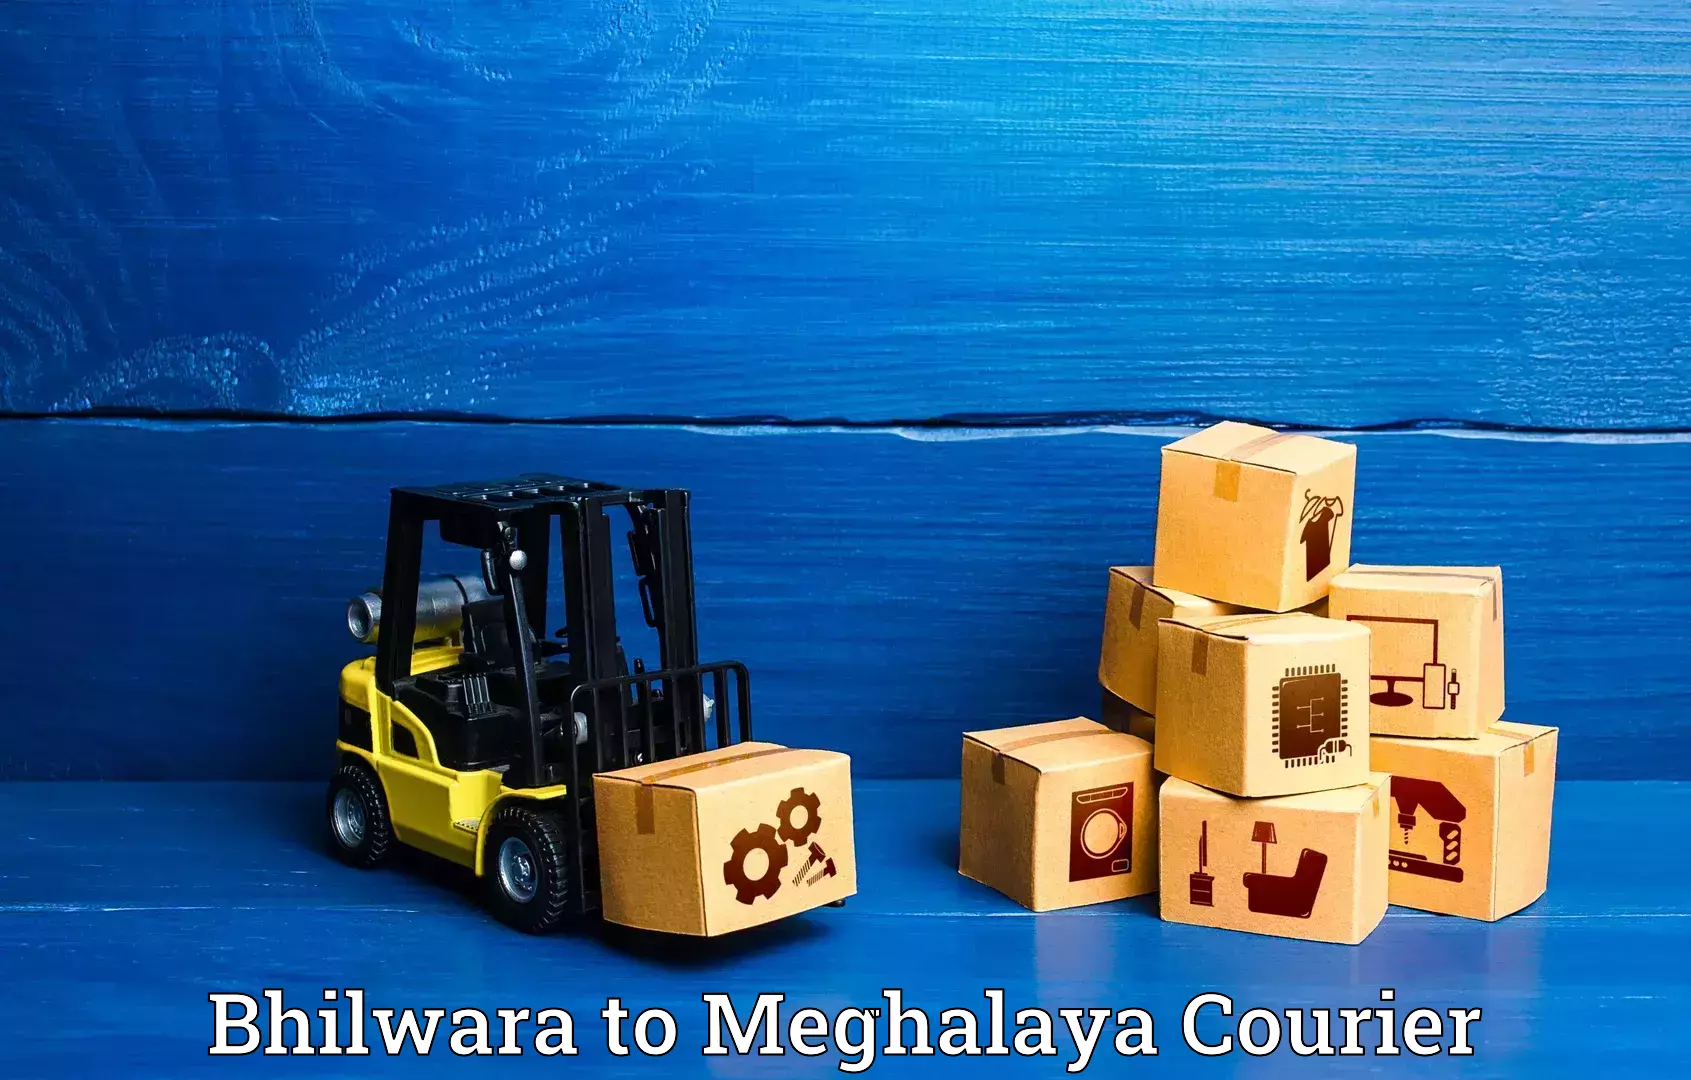 Luggage shipment specialists Bhilwara to Rongjeng